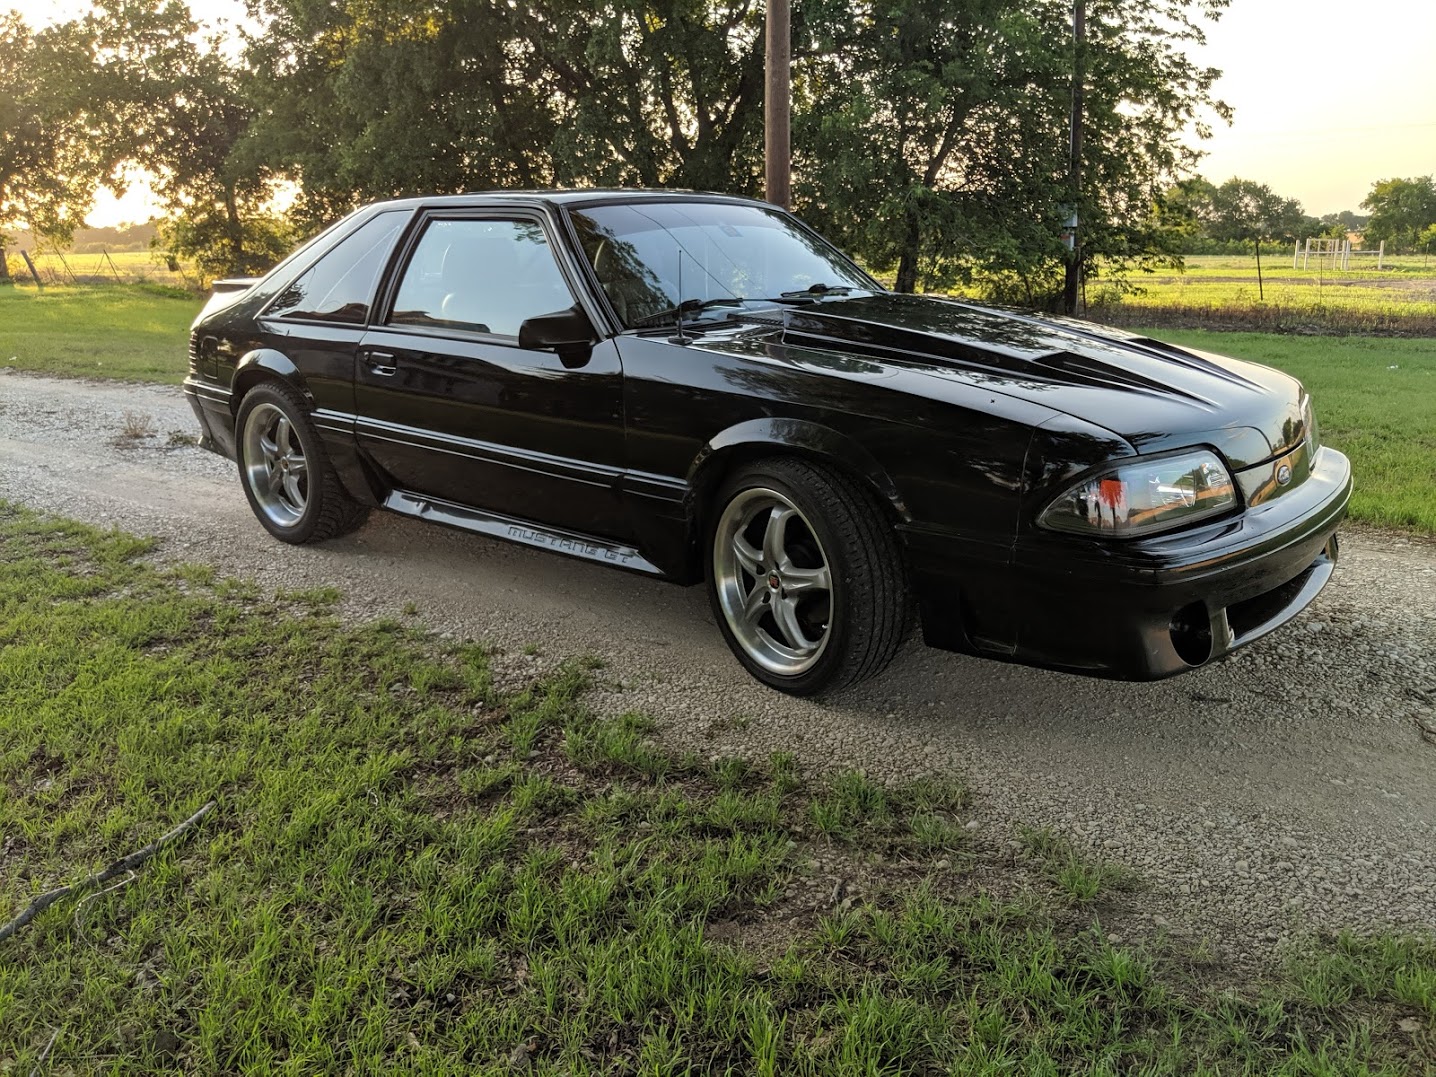 1989 Mustang Gt Specs